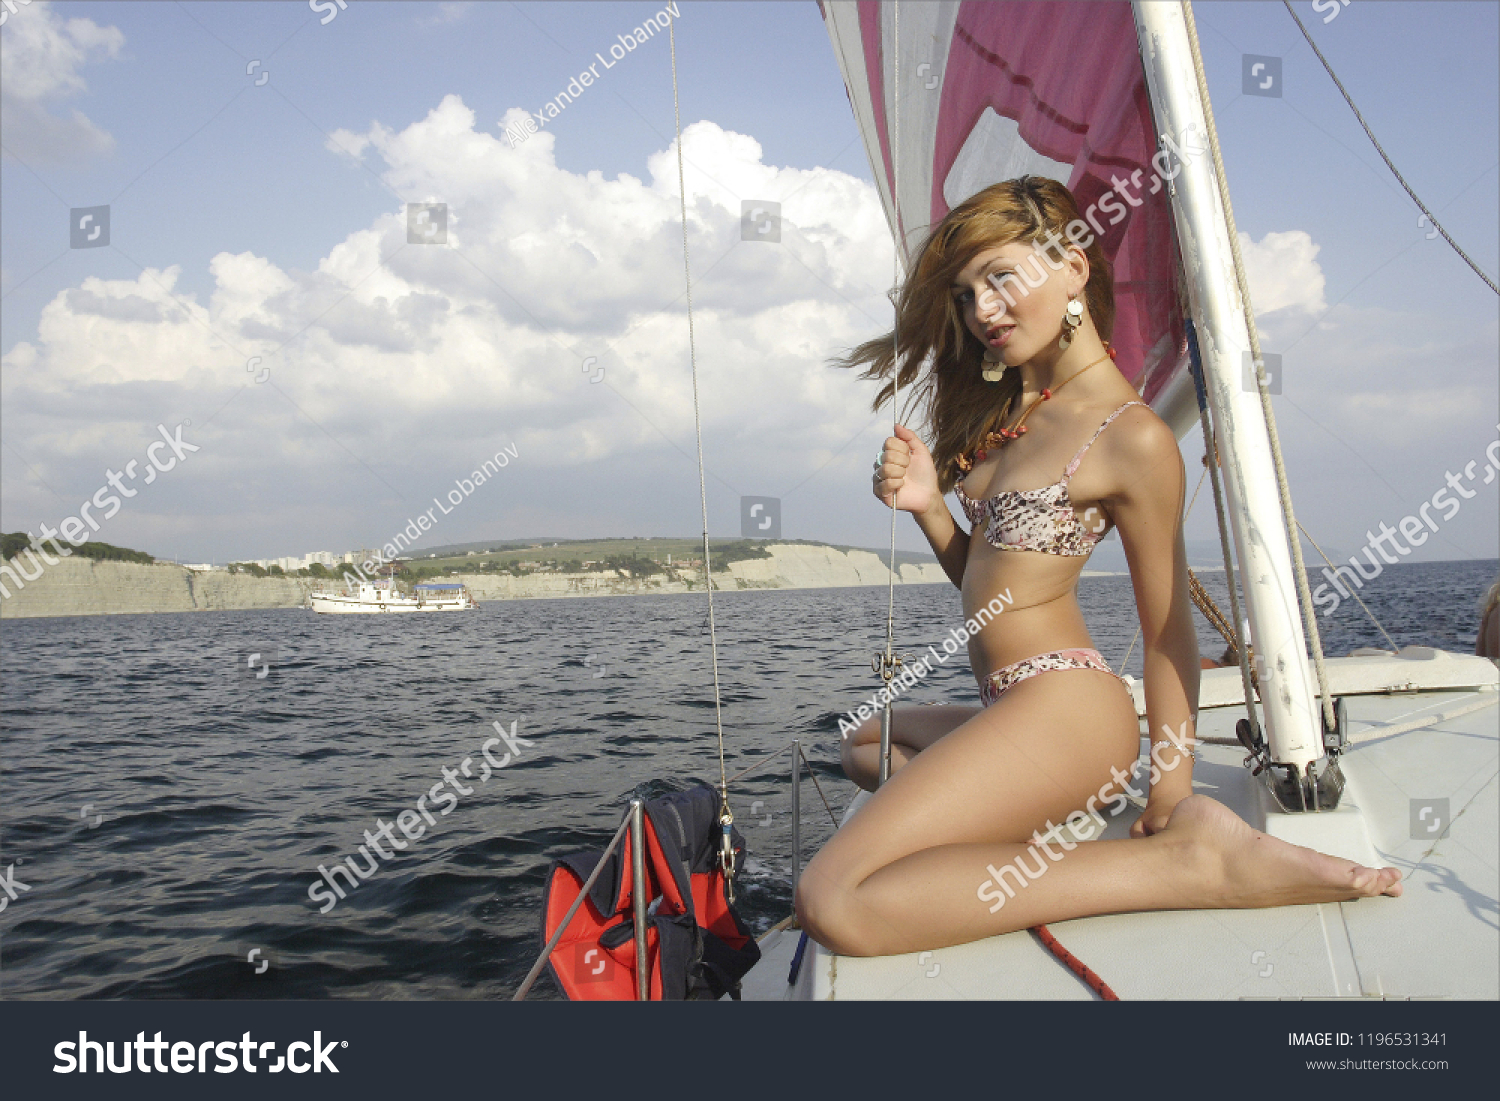 Катя на заброшенной яхте - 20 фото